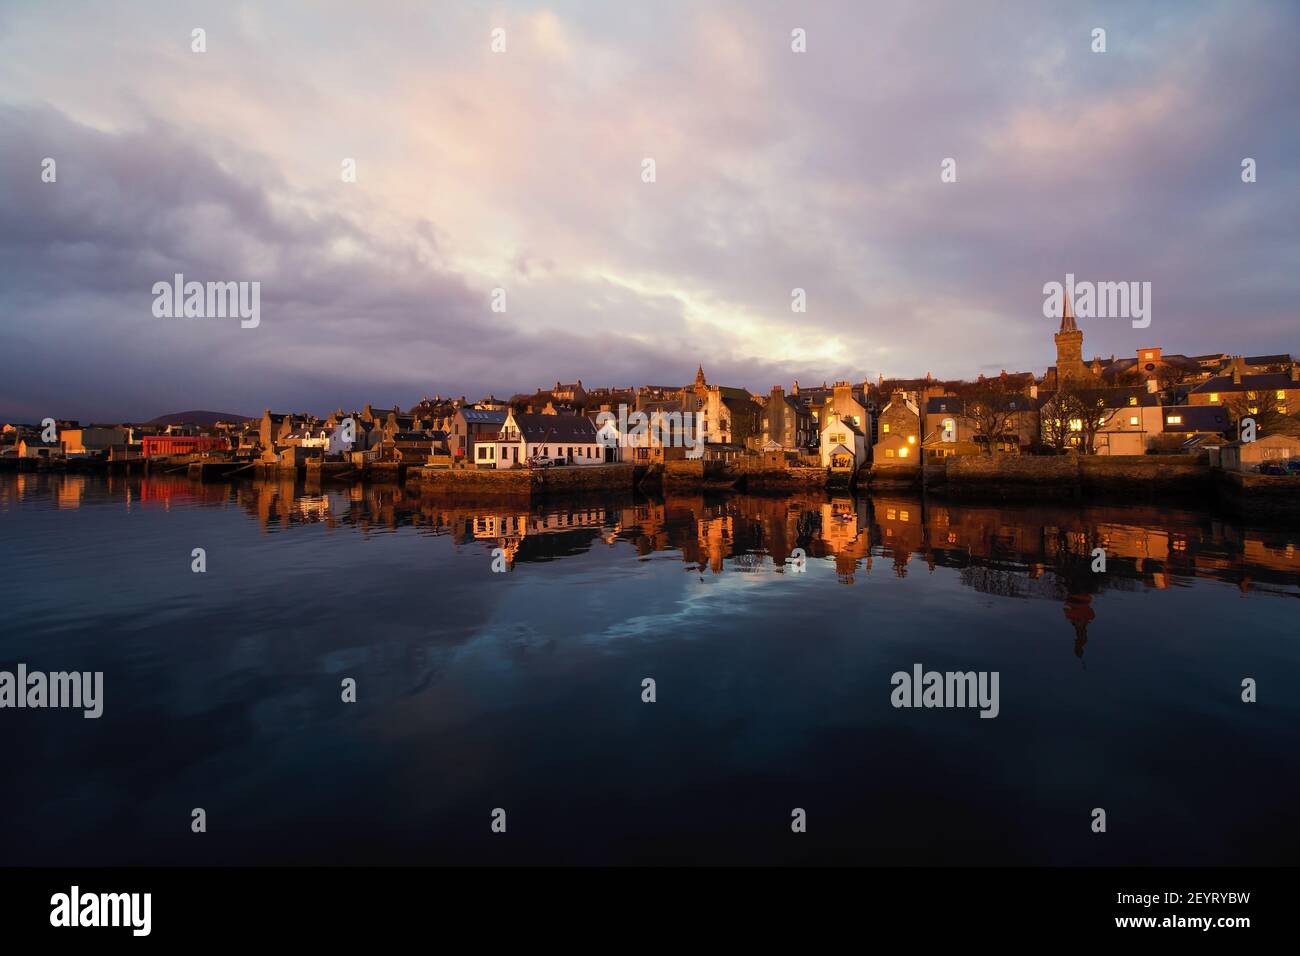 La lumière du matin dorée frappe les maisons anciennes du front de mer sur l'île d'Orkney Dans le nord de l'Écosse avec de l'eau bleu foncé et un ciel lumineux Banque D'Images